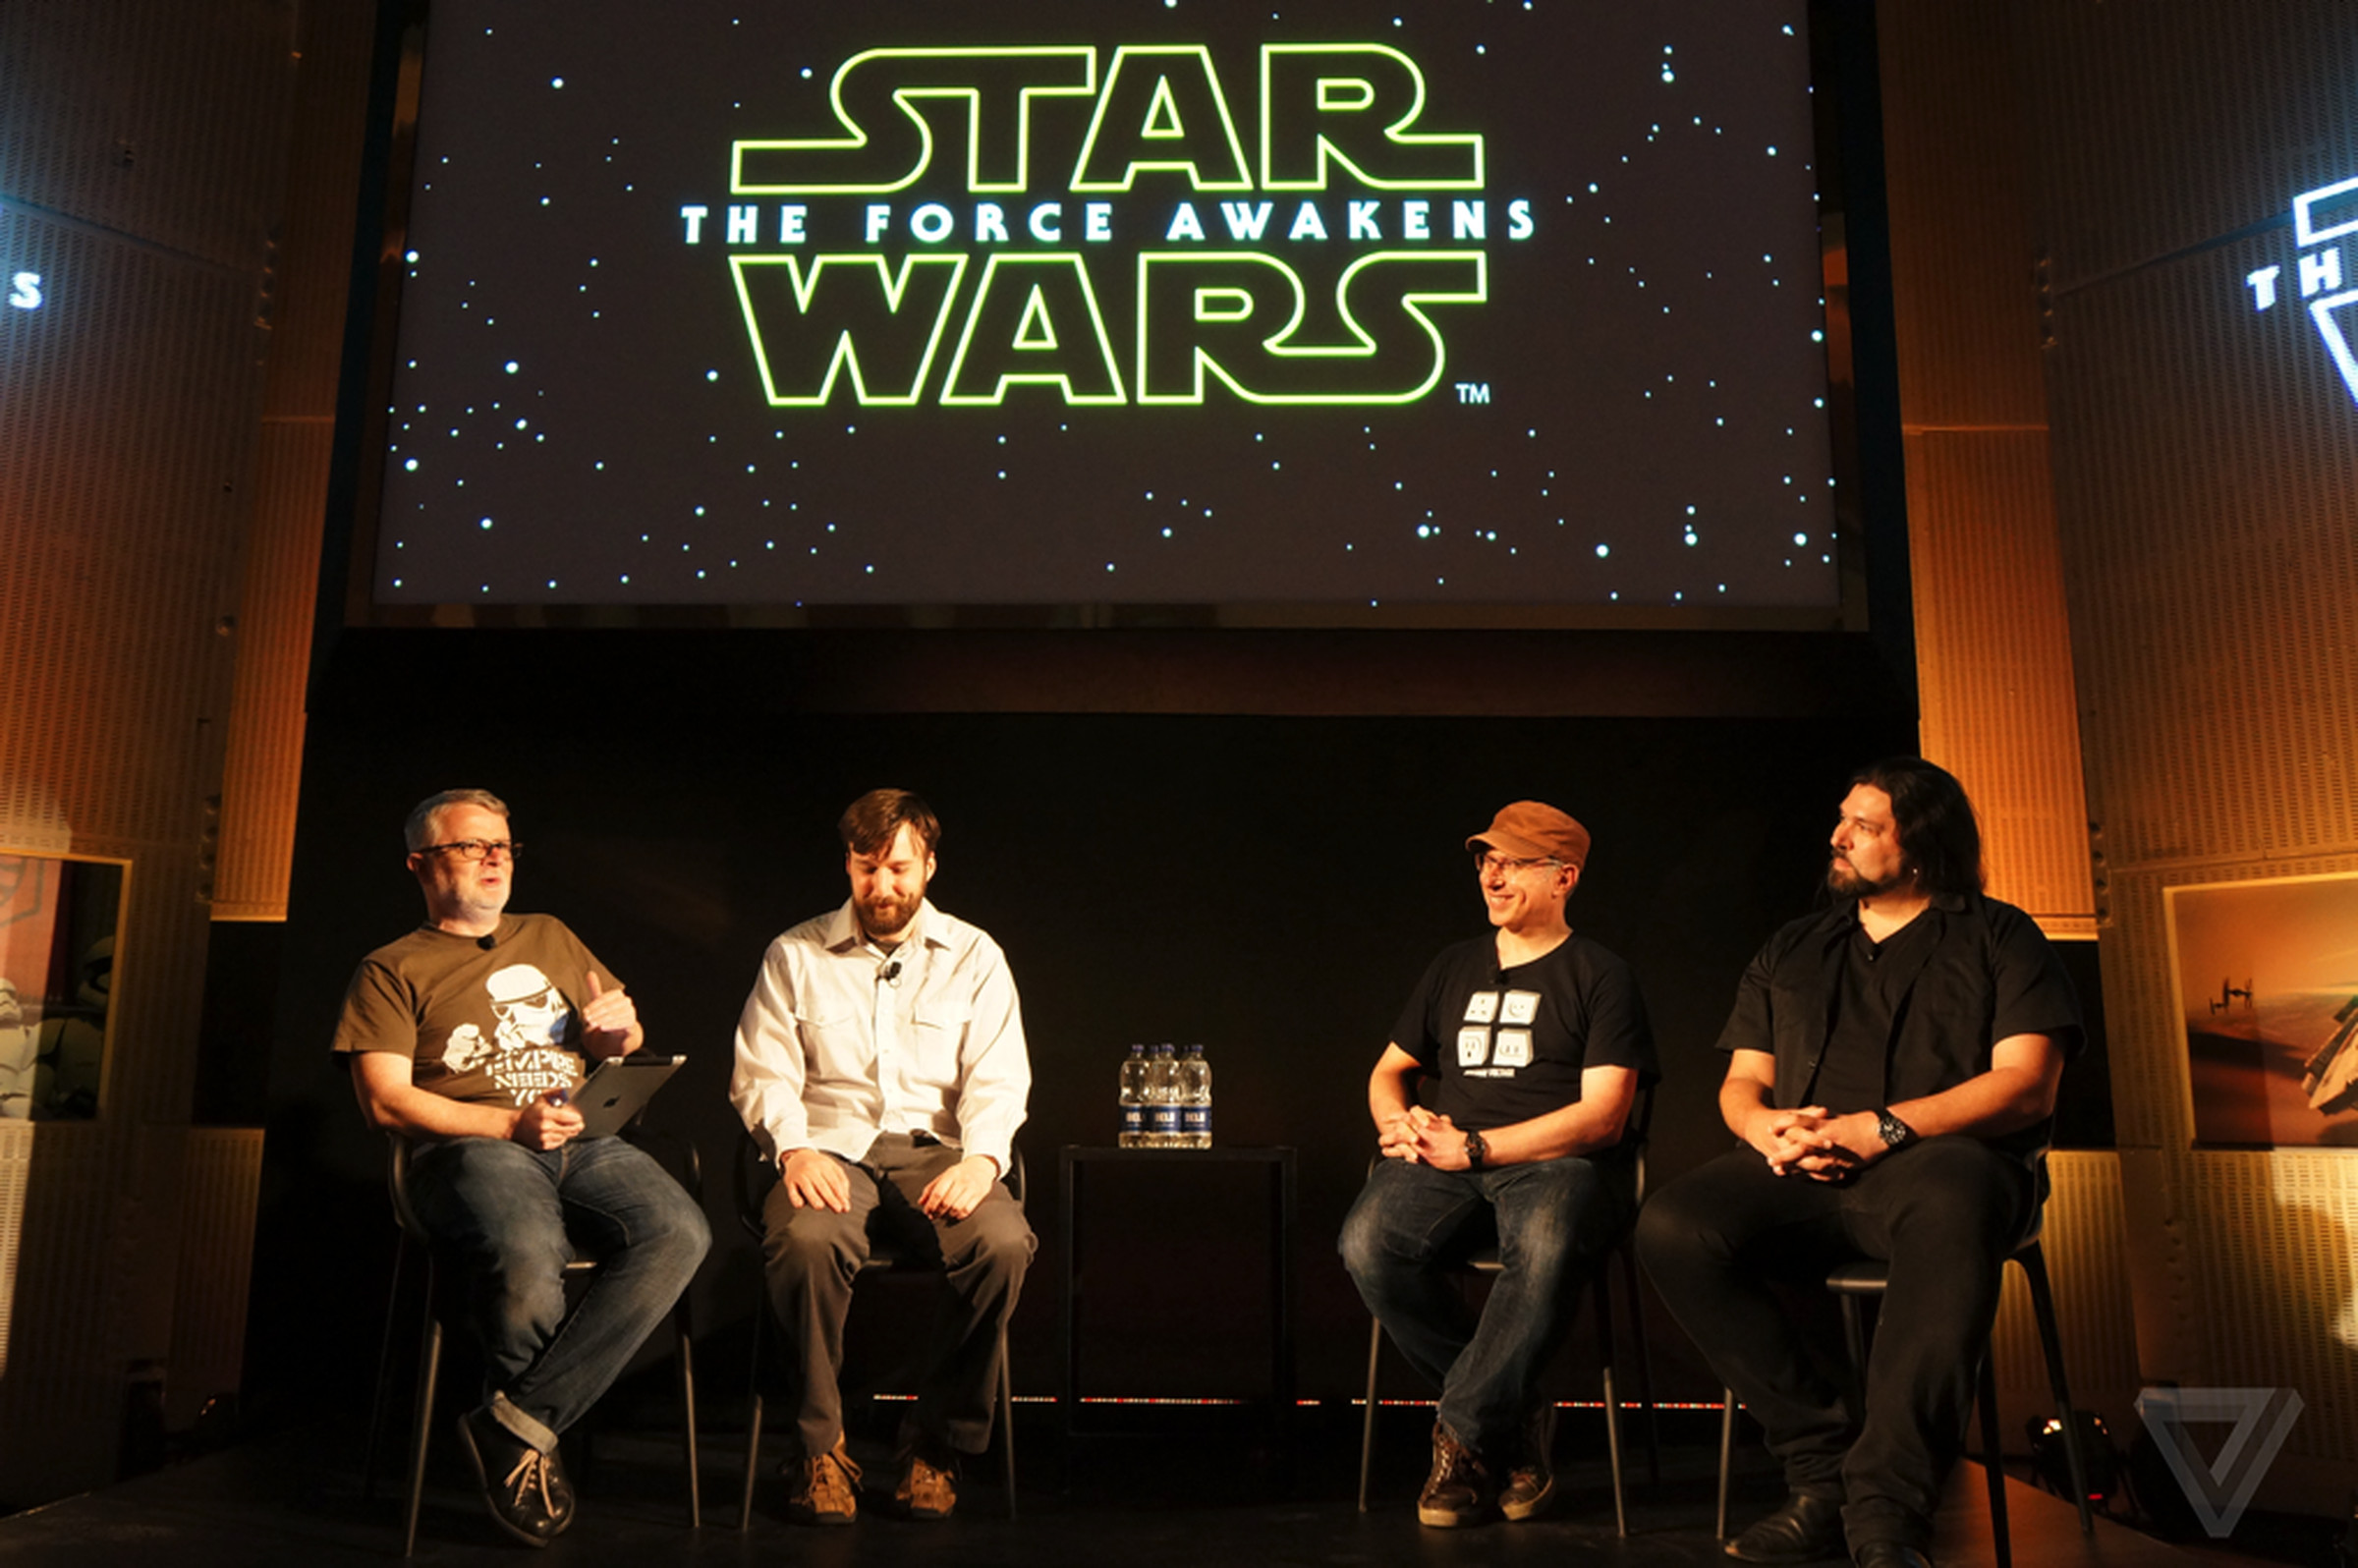 Star Wars: The Force Awakens Hologram Vinyl